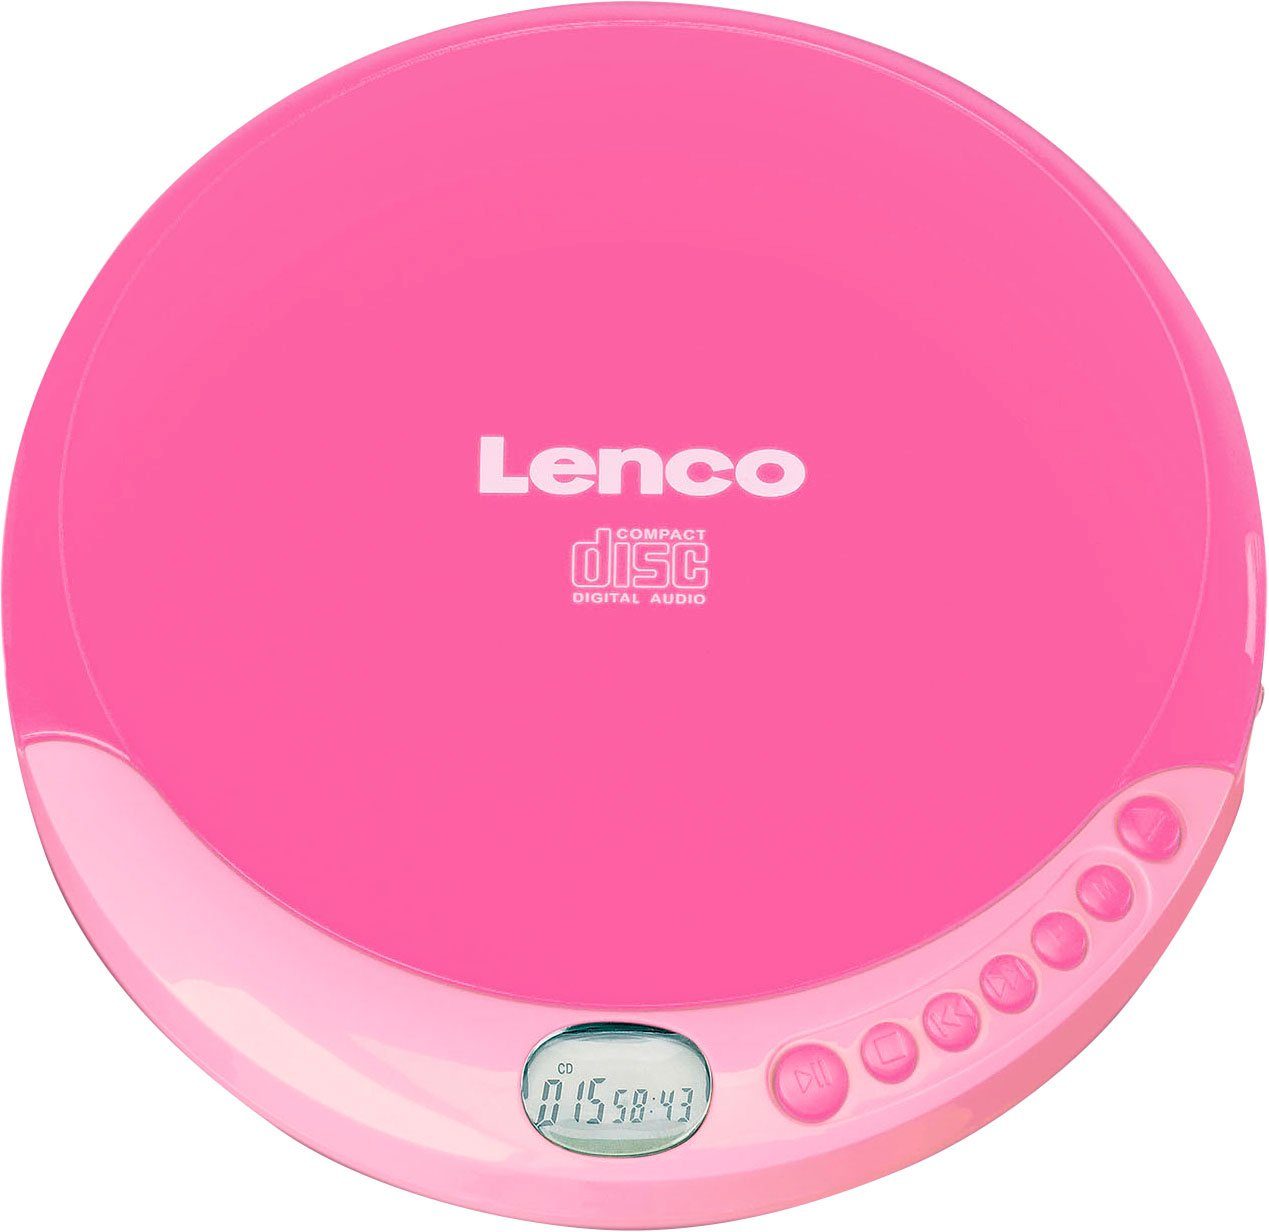 rosa CD-Player CD-011 Lenco